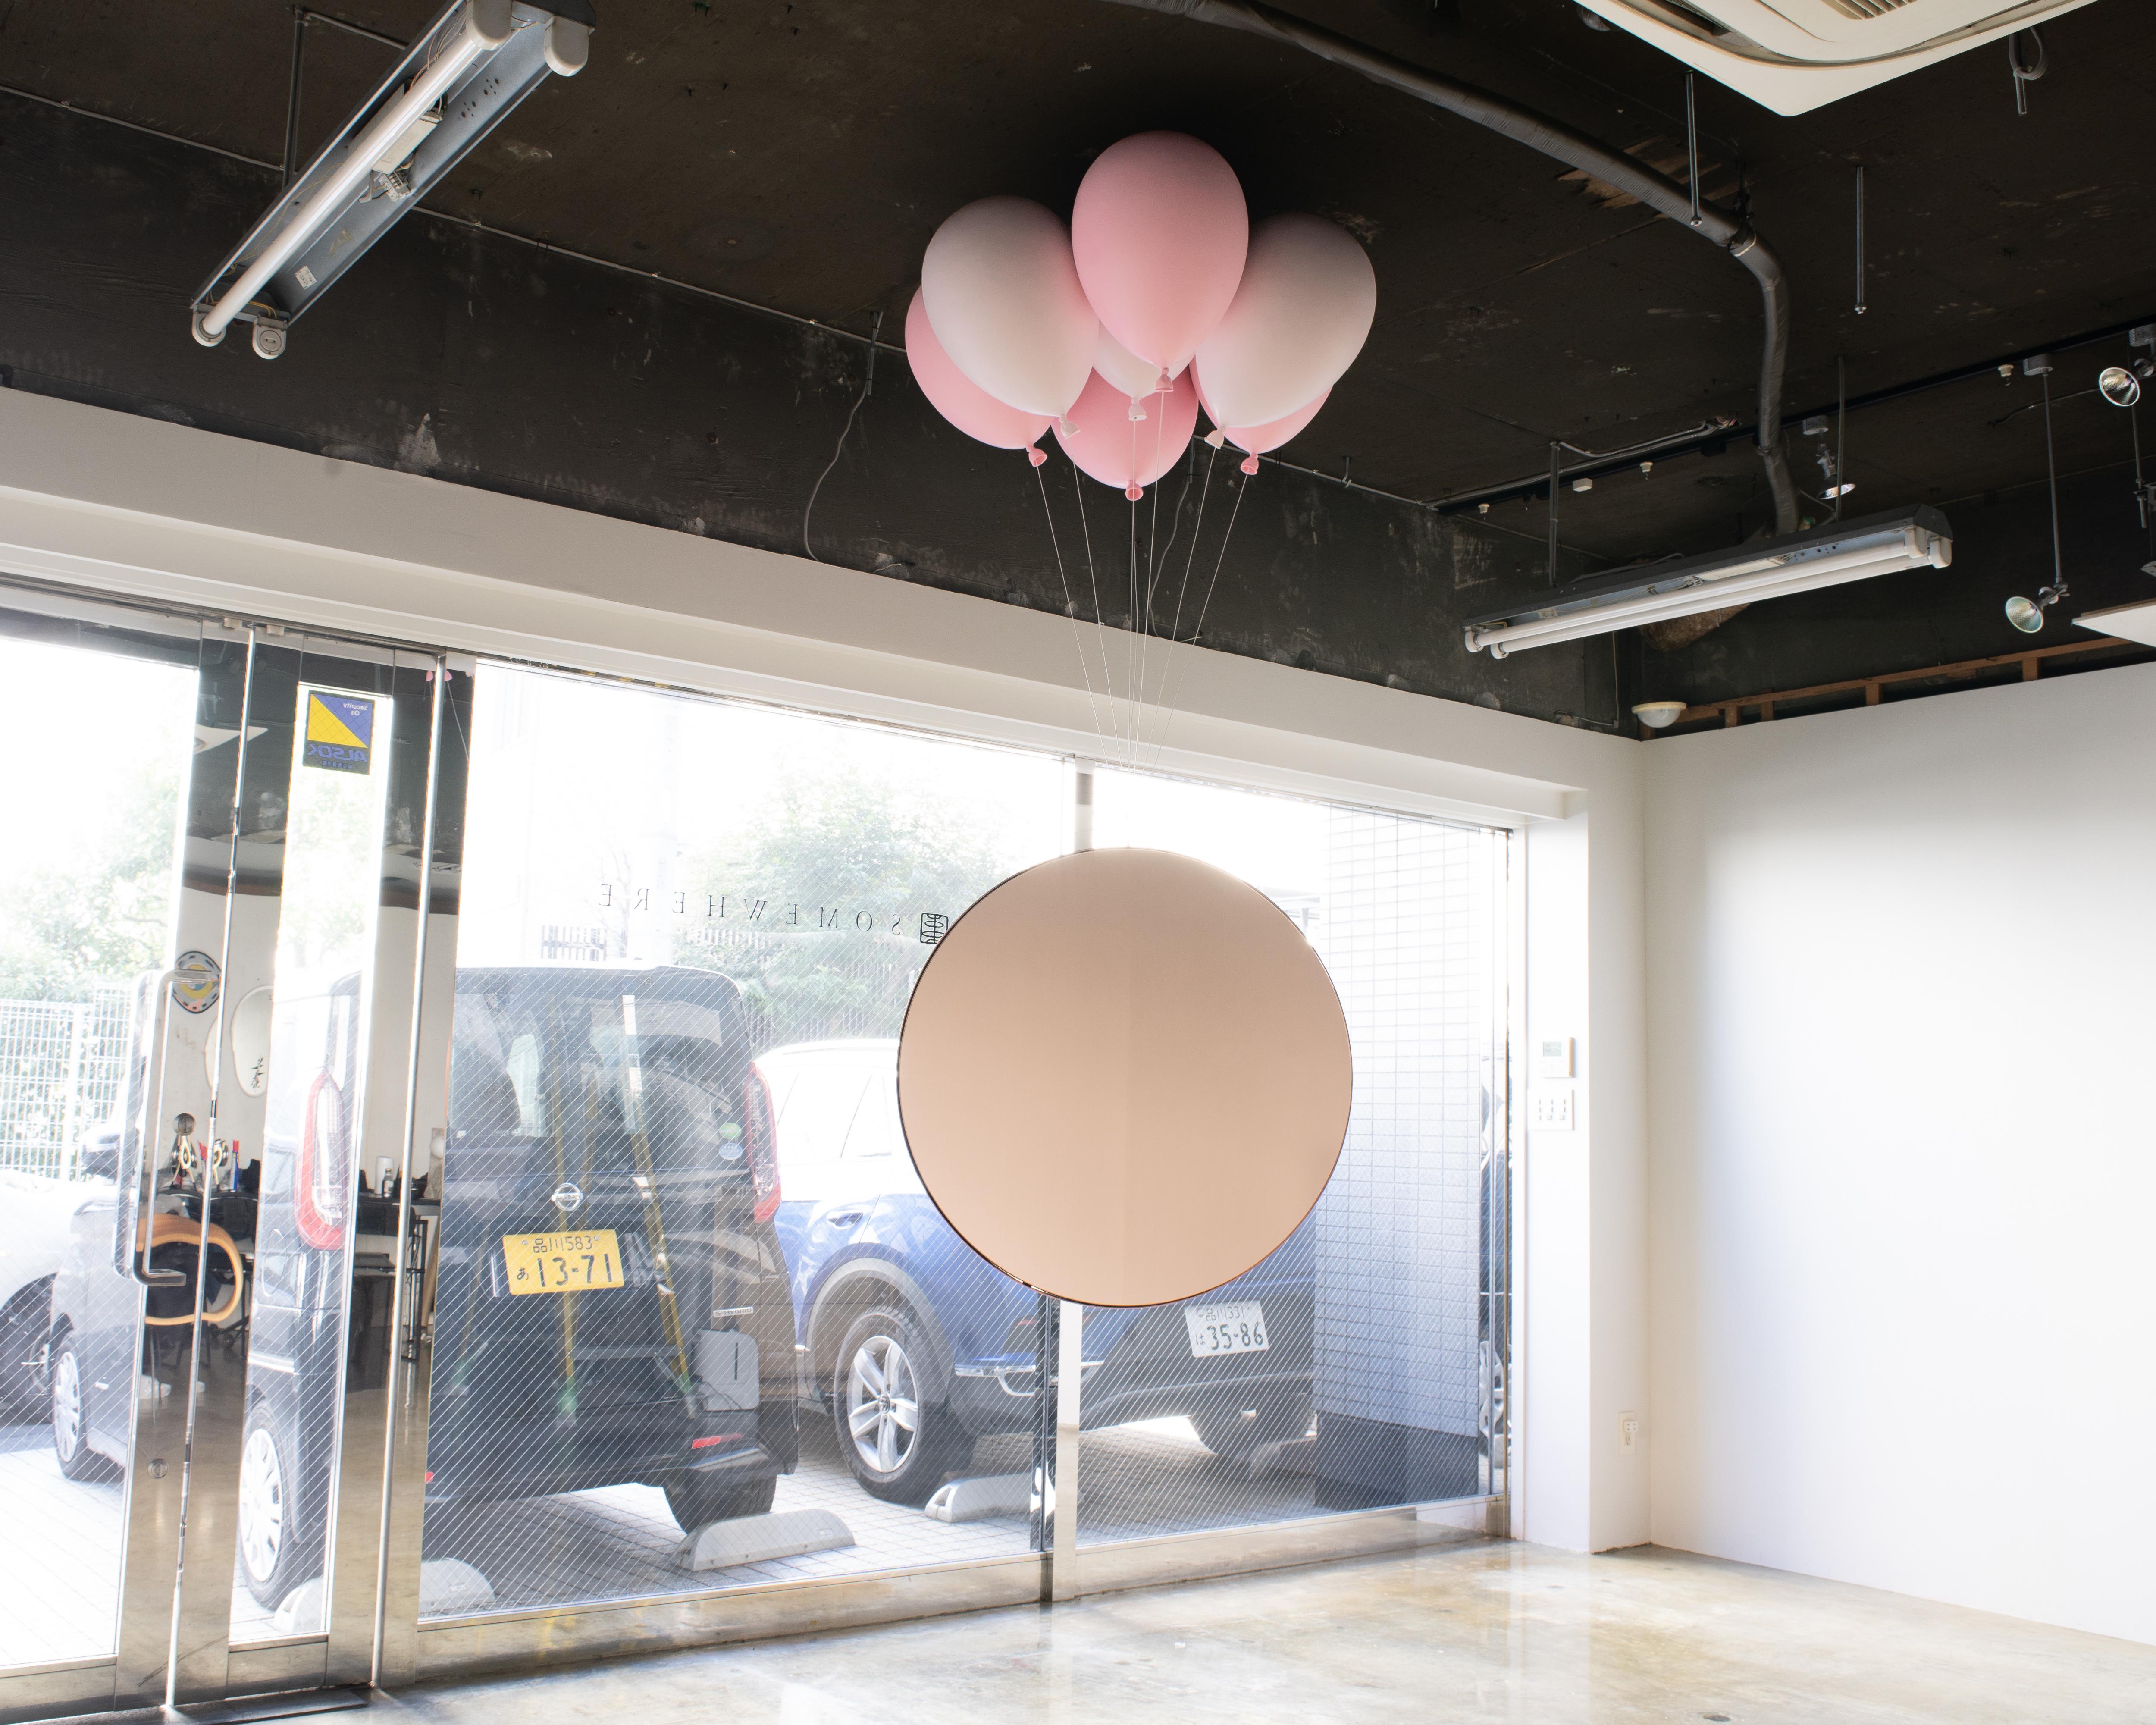 Ballon-Bank entworfen von Satoshi Itasaka von h220430
Dies ist ein an der Decke montierter Hängespiegel. Besteht aus 7 Luftballons und einem Spiegel.
Der Ballon besteht aus FRP, das Gewinde aus Stahldraht. 
Die Farbe der Ballons kann nach Ihren